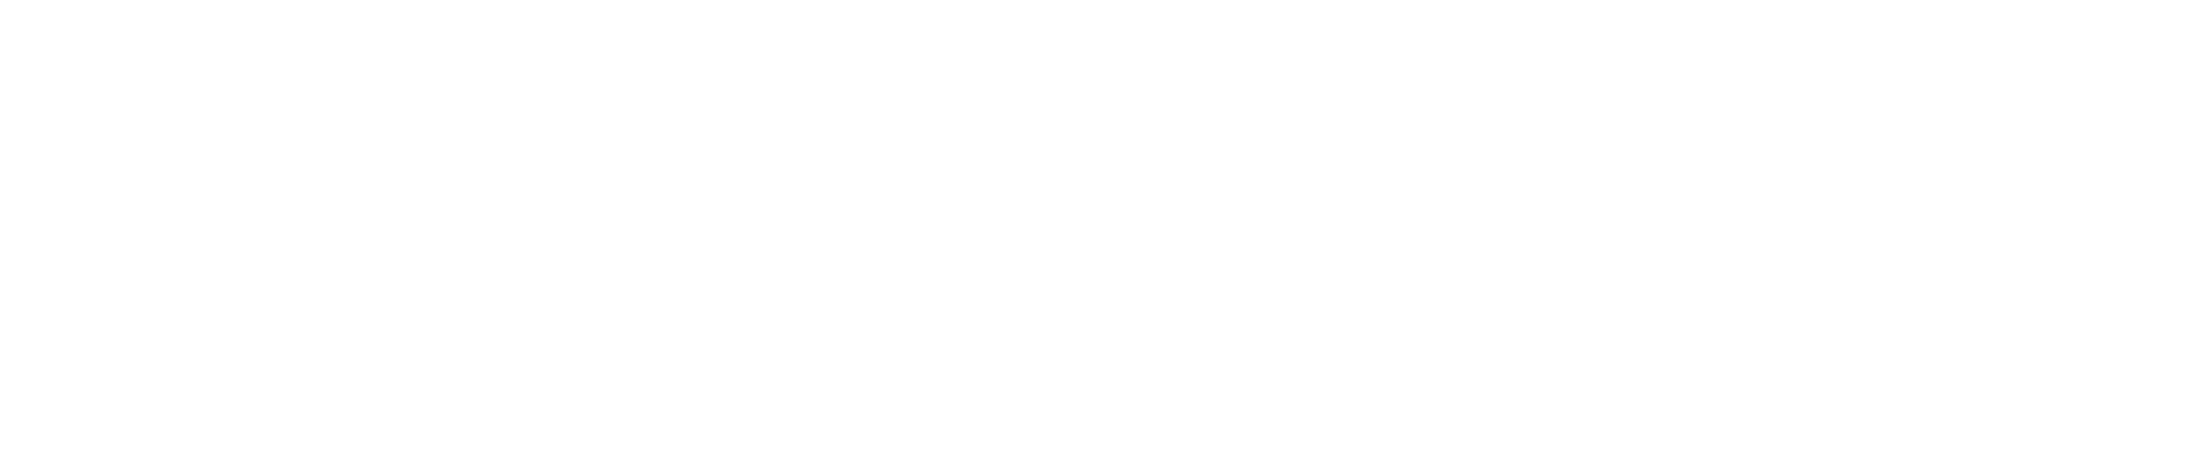 Logotipo de Microsoft en blanco